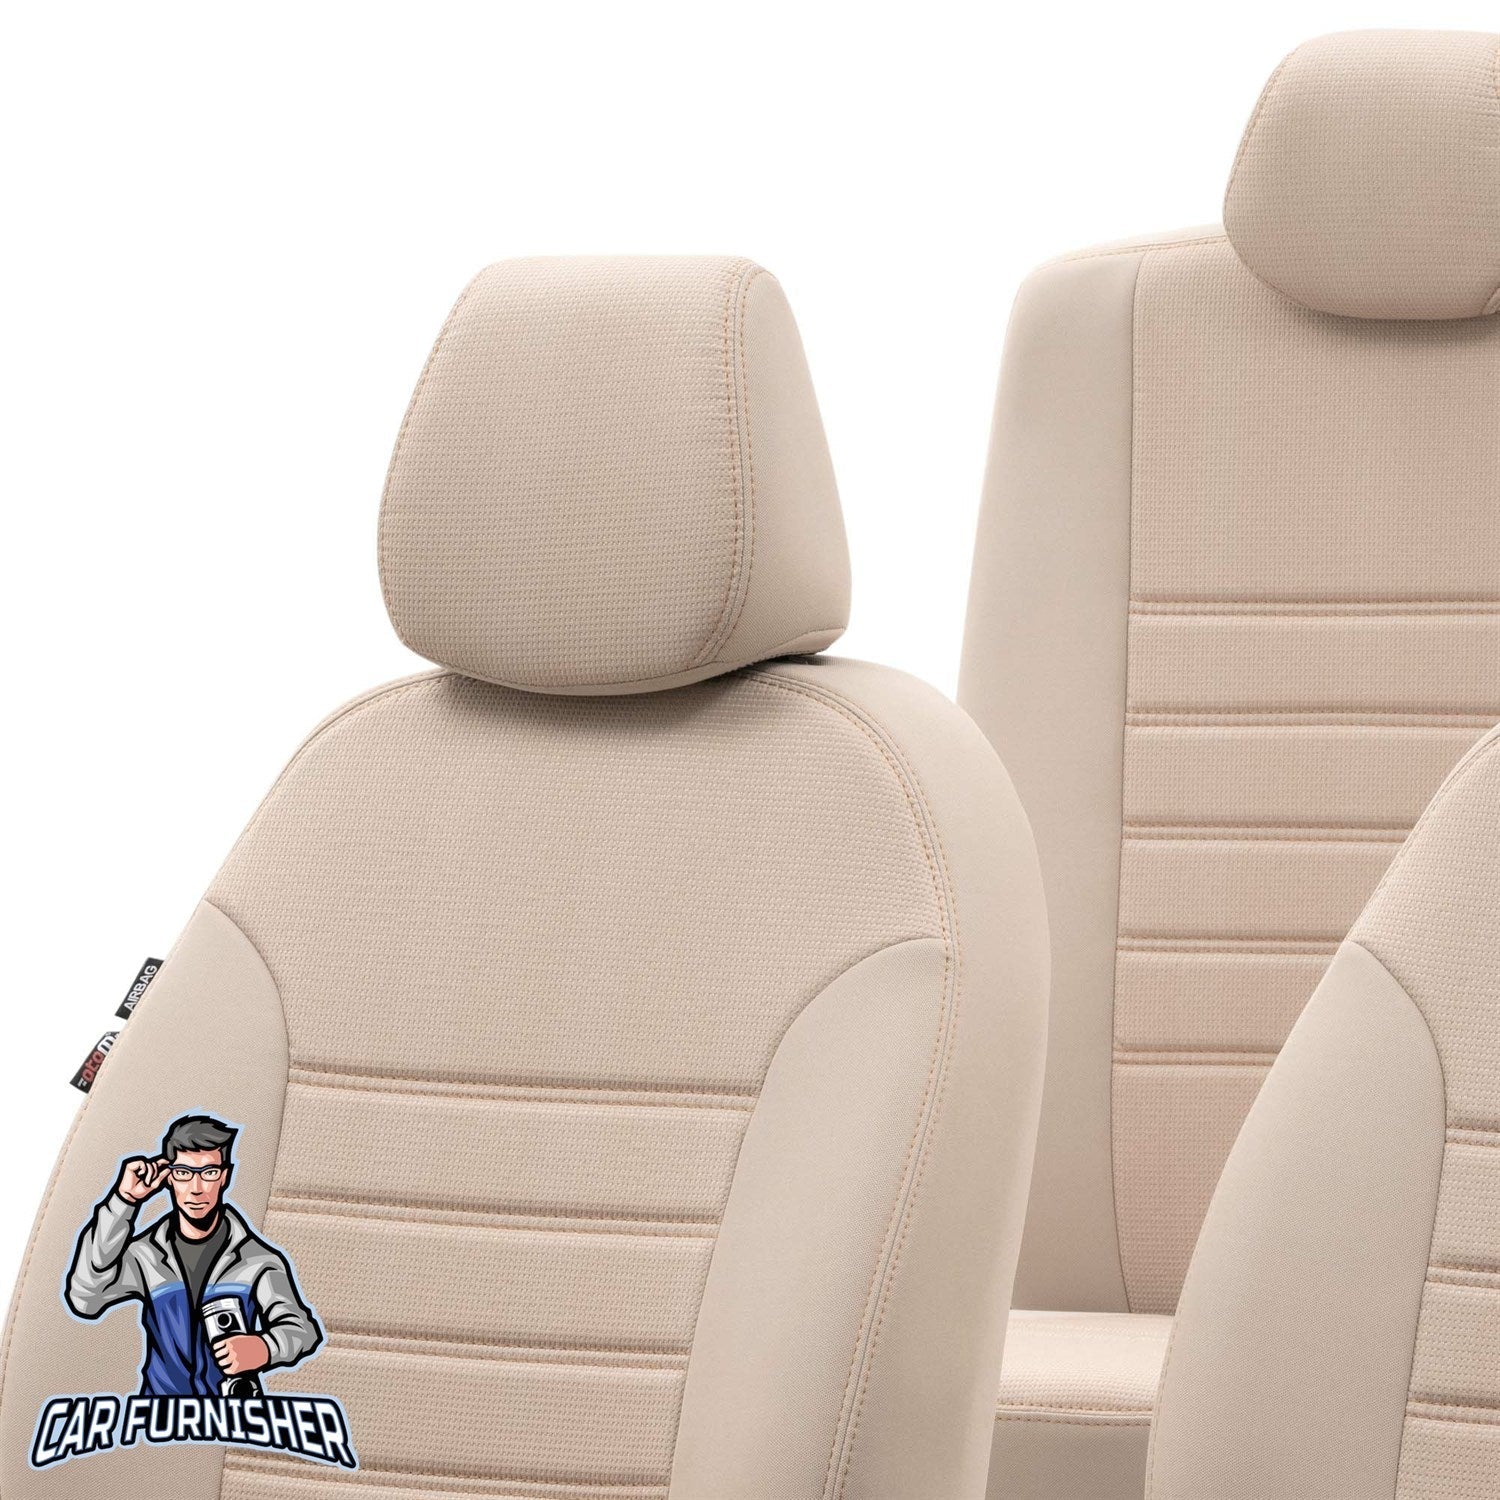 Peugeot 108 Seat Cover Original Jacquard Design Beige Jacquard Fabric